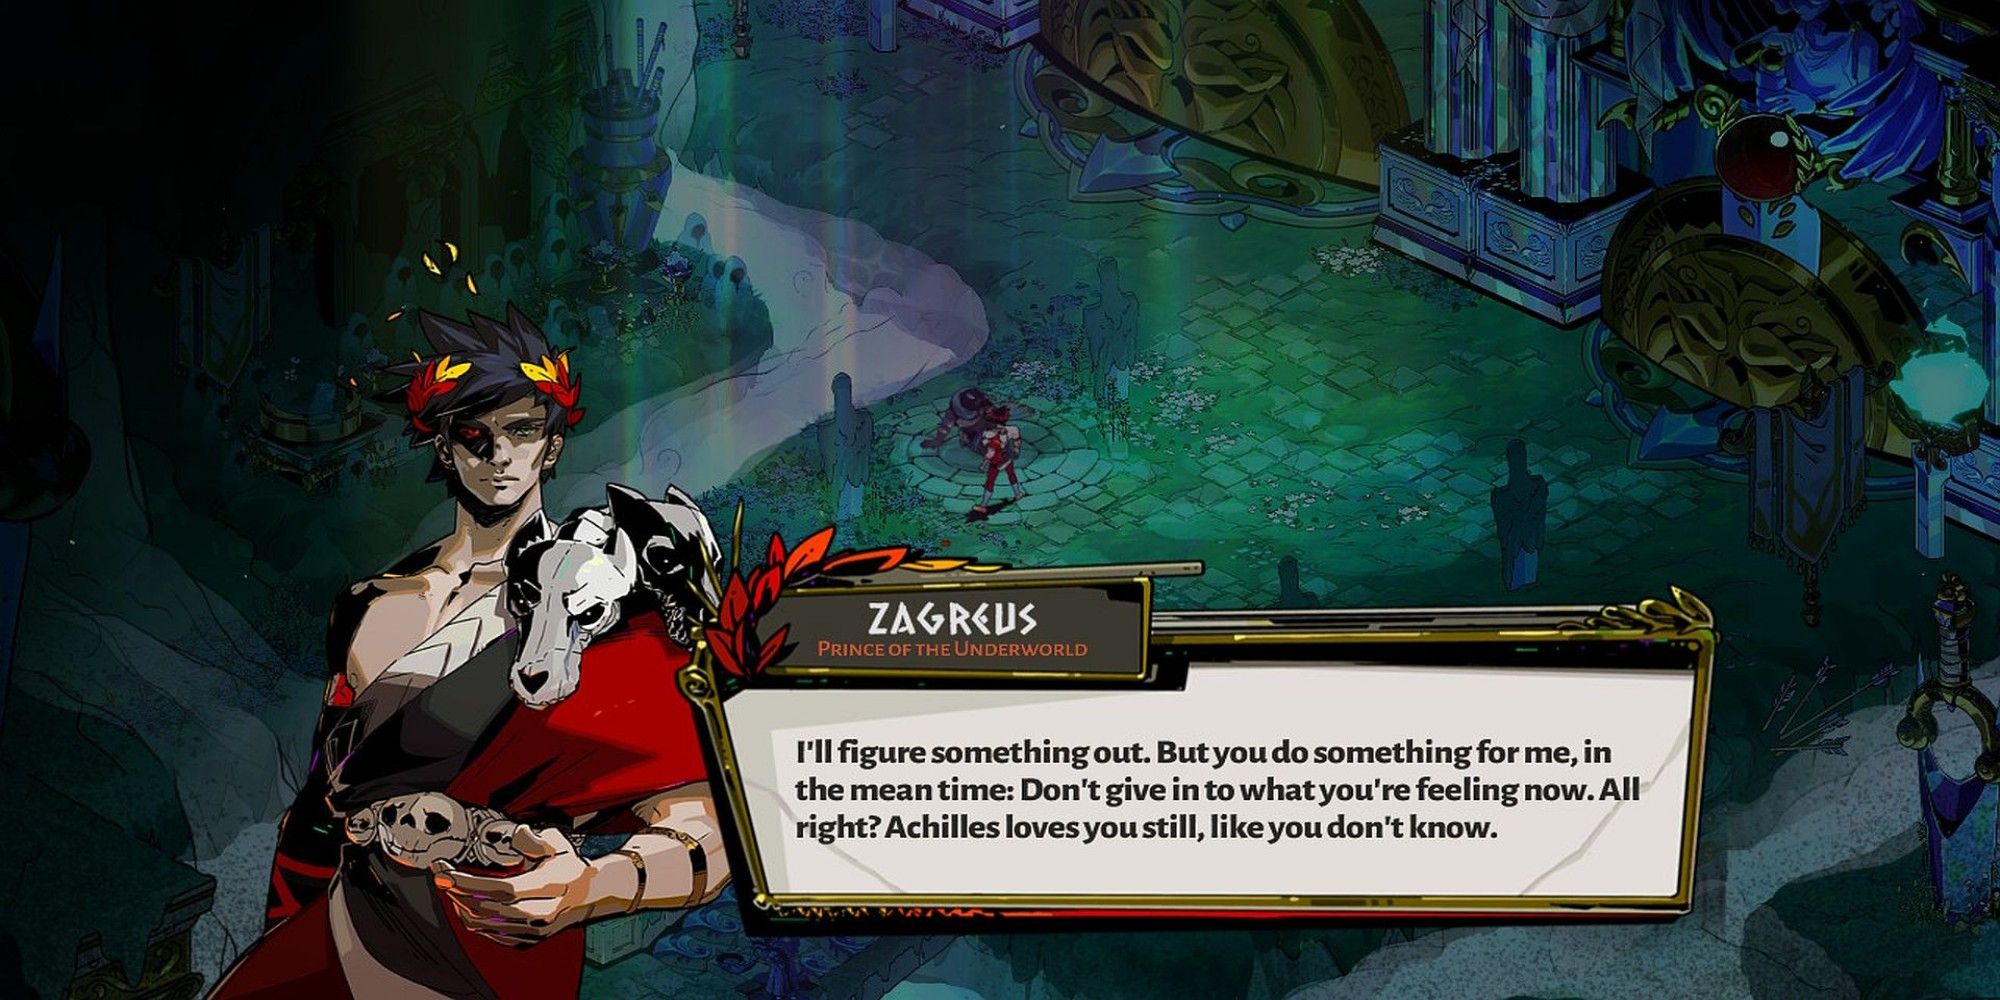 A Zagreus dialogue box pops up, reassuring Patroclus